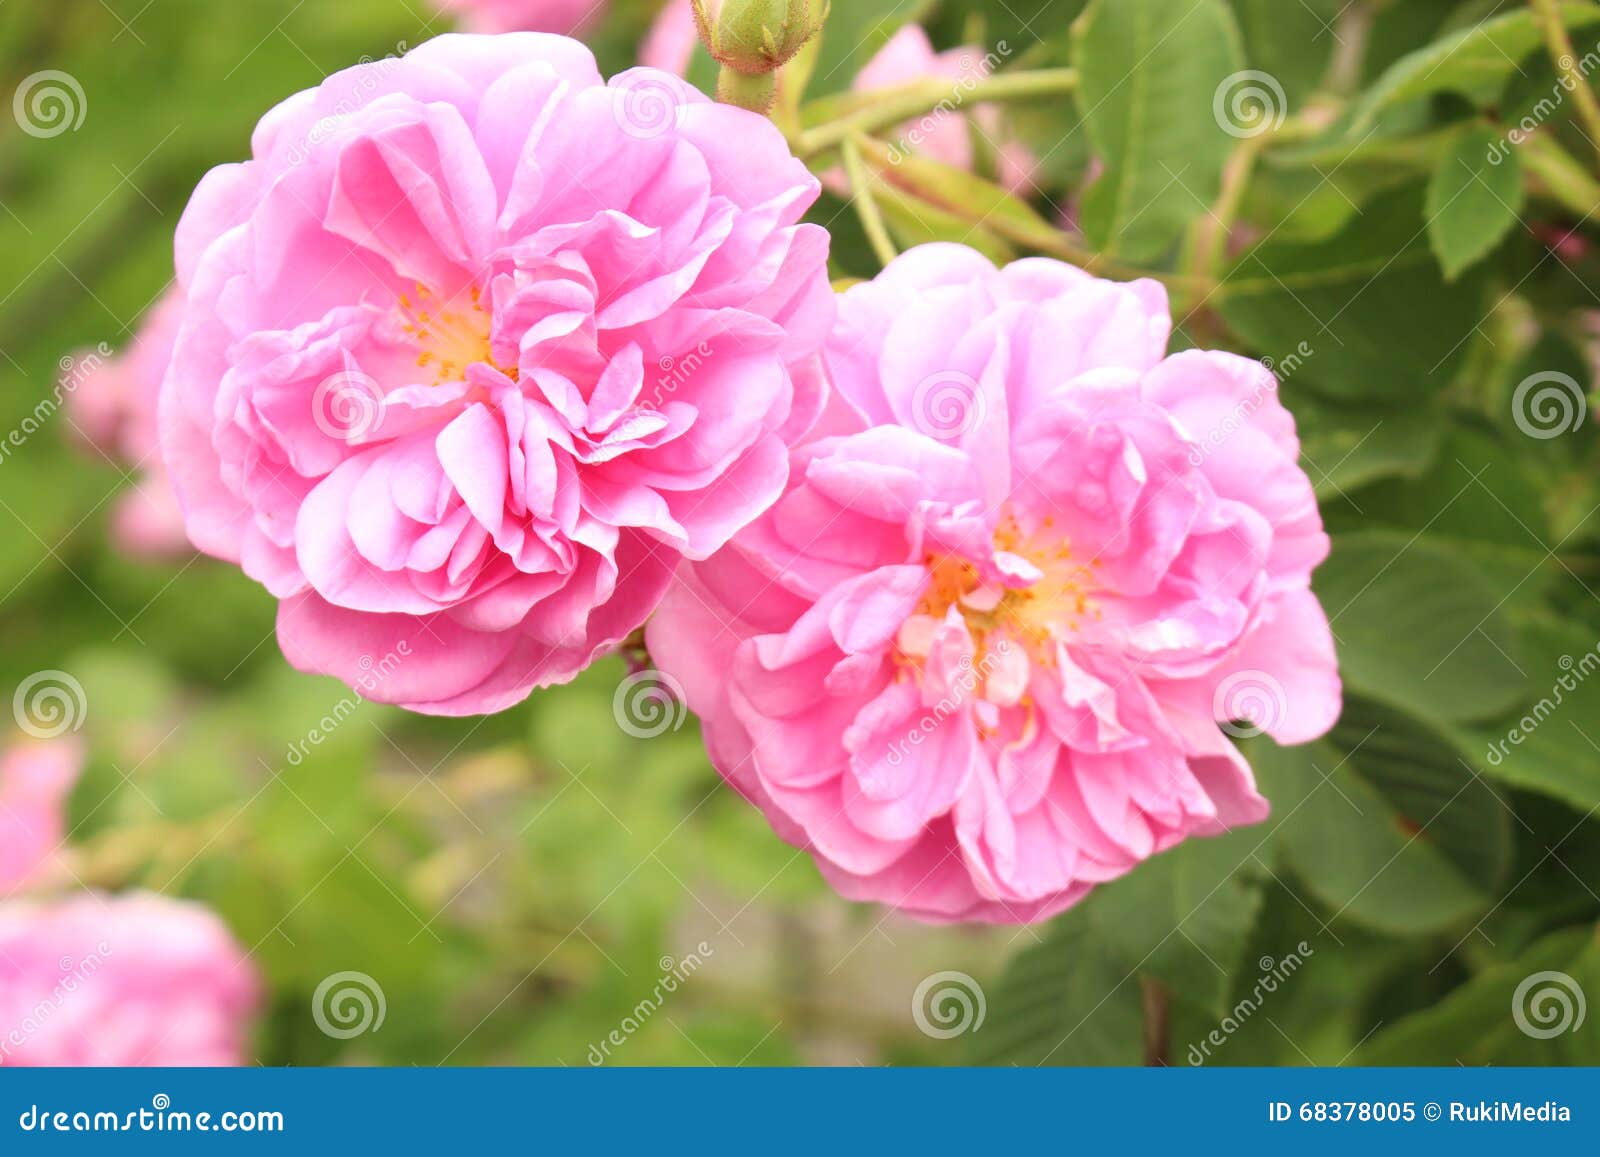 damask rose - rosa x damascena